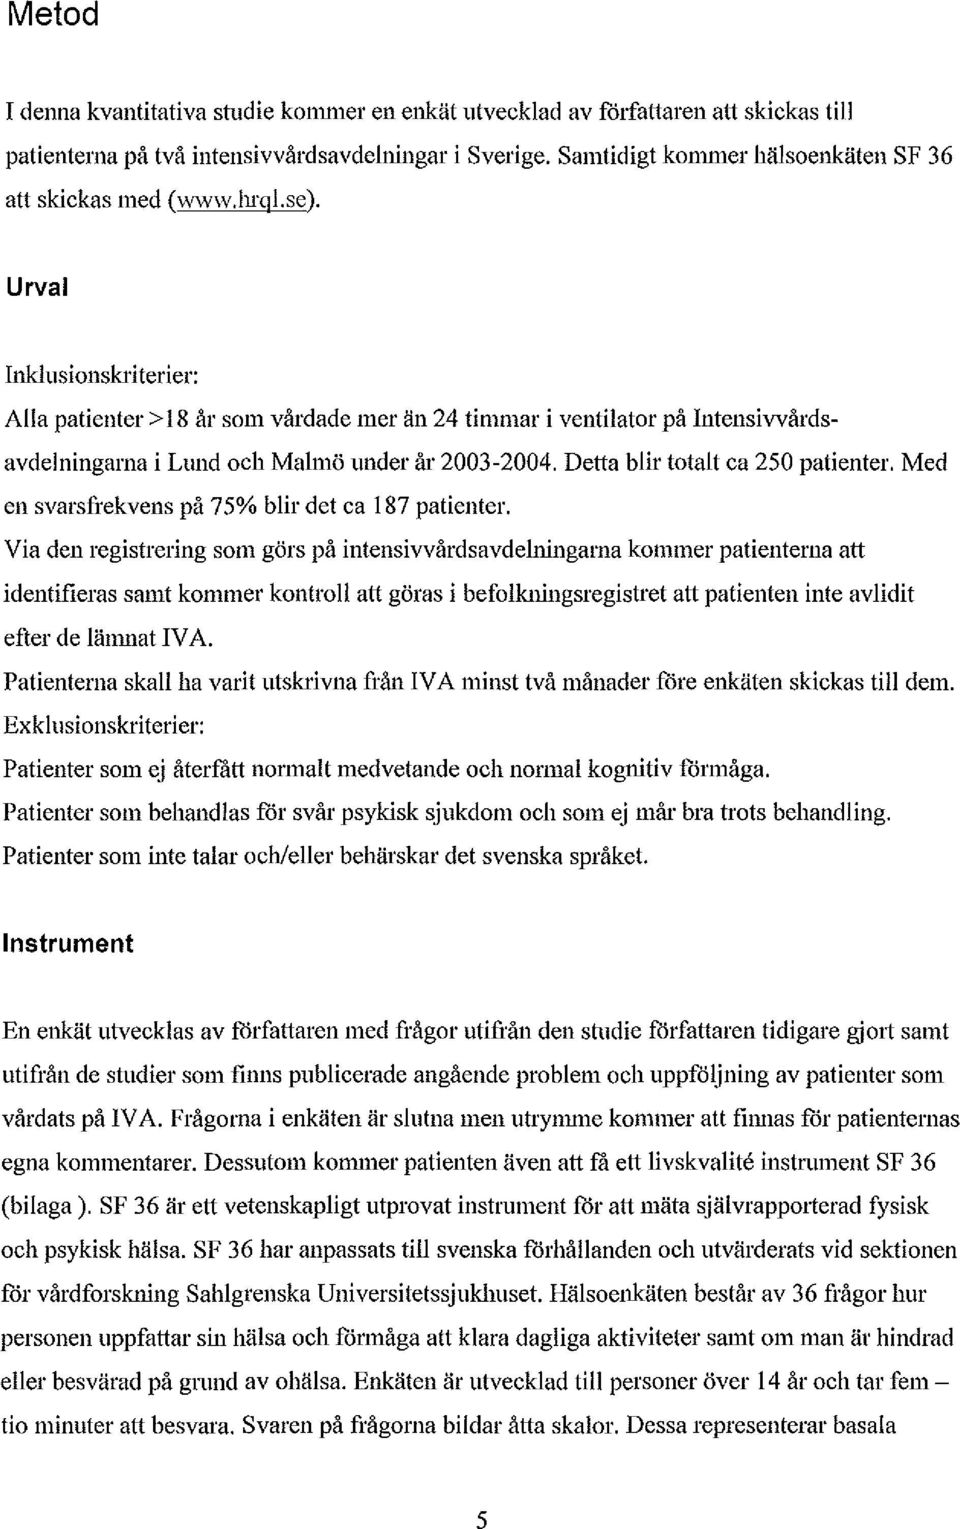 Urval Inklusionskriterier: Alla patienter>18 år som vårdade mer än 24 timmar i ventilator på Intensivvårdsavdelningarna i Lund och Malmö under år 2003-2004. Detta blir totalt ca 250 patienter.